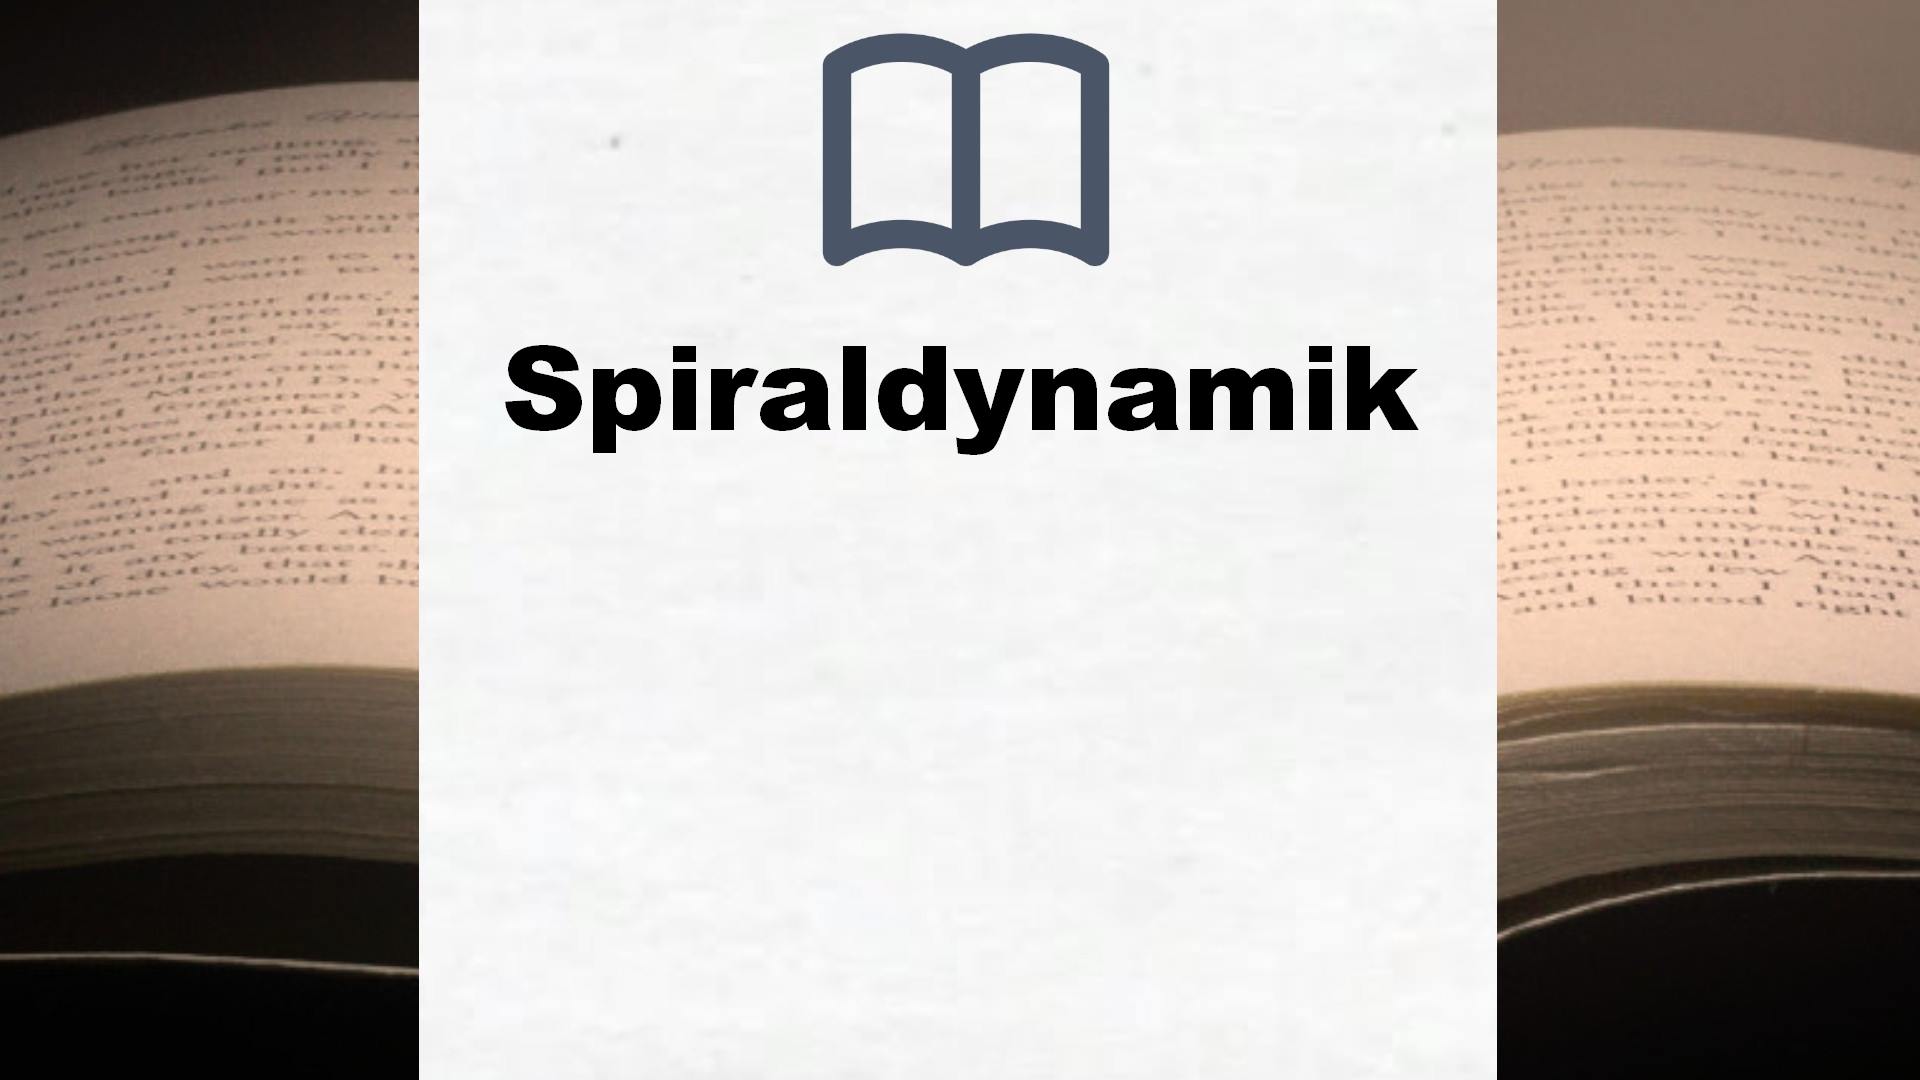 Bücher über Spiraldynamik